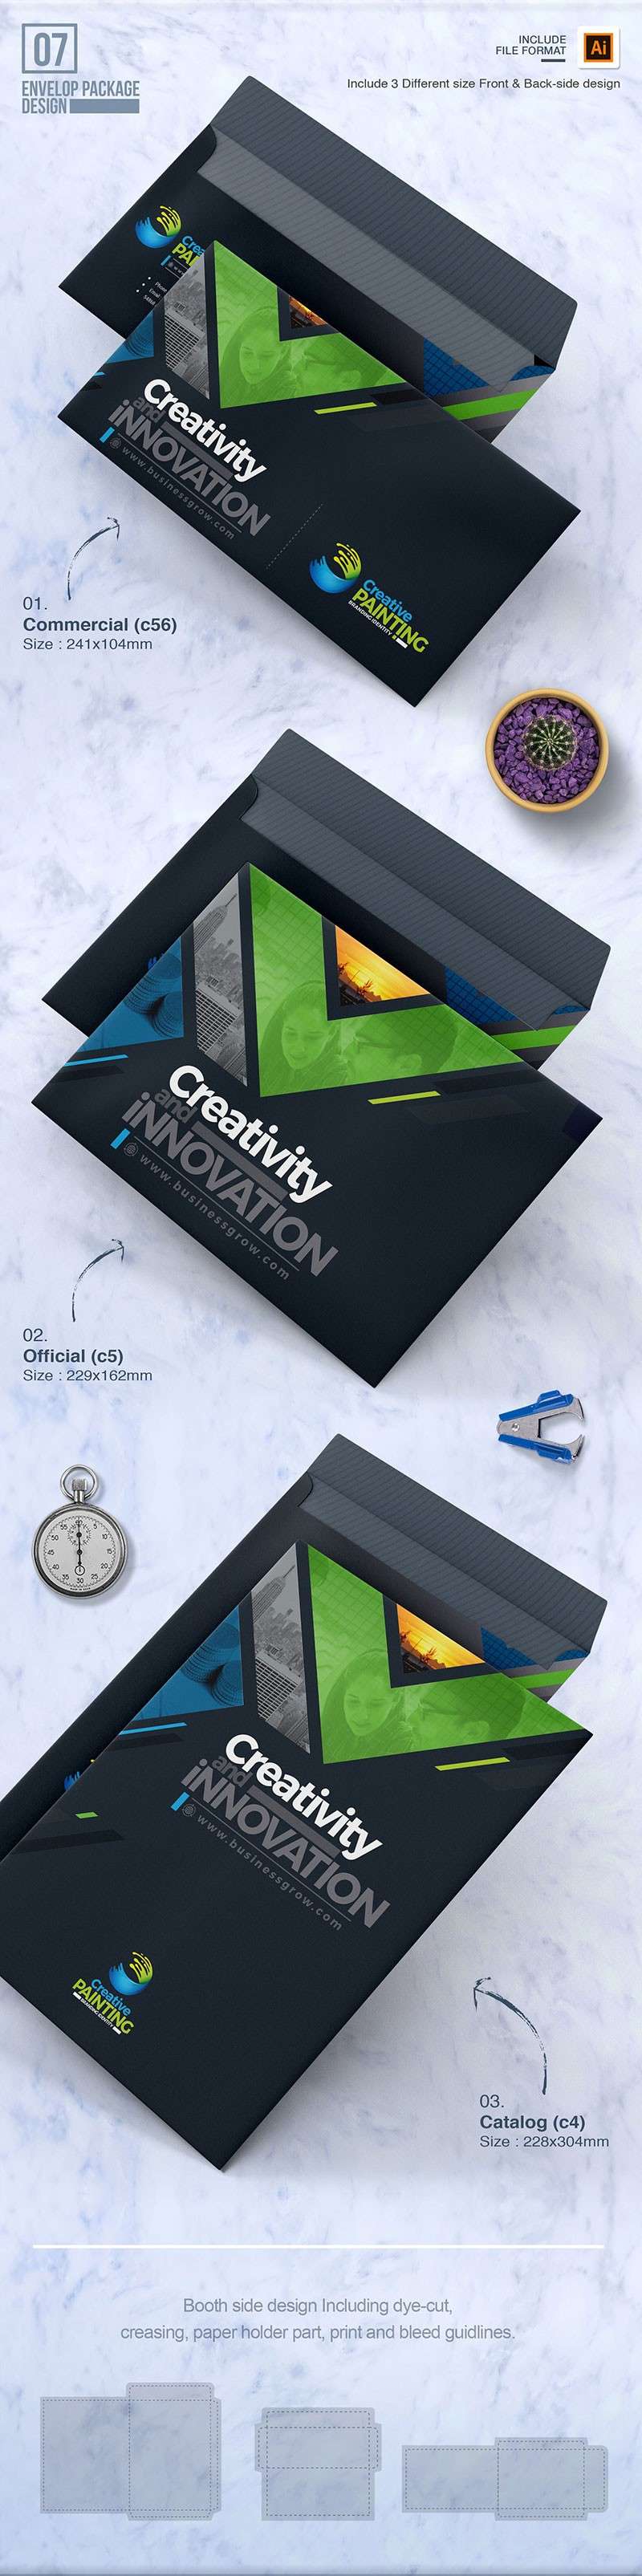 完整的商业品牌VI手册设计模板 样机素材 第4张